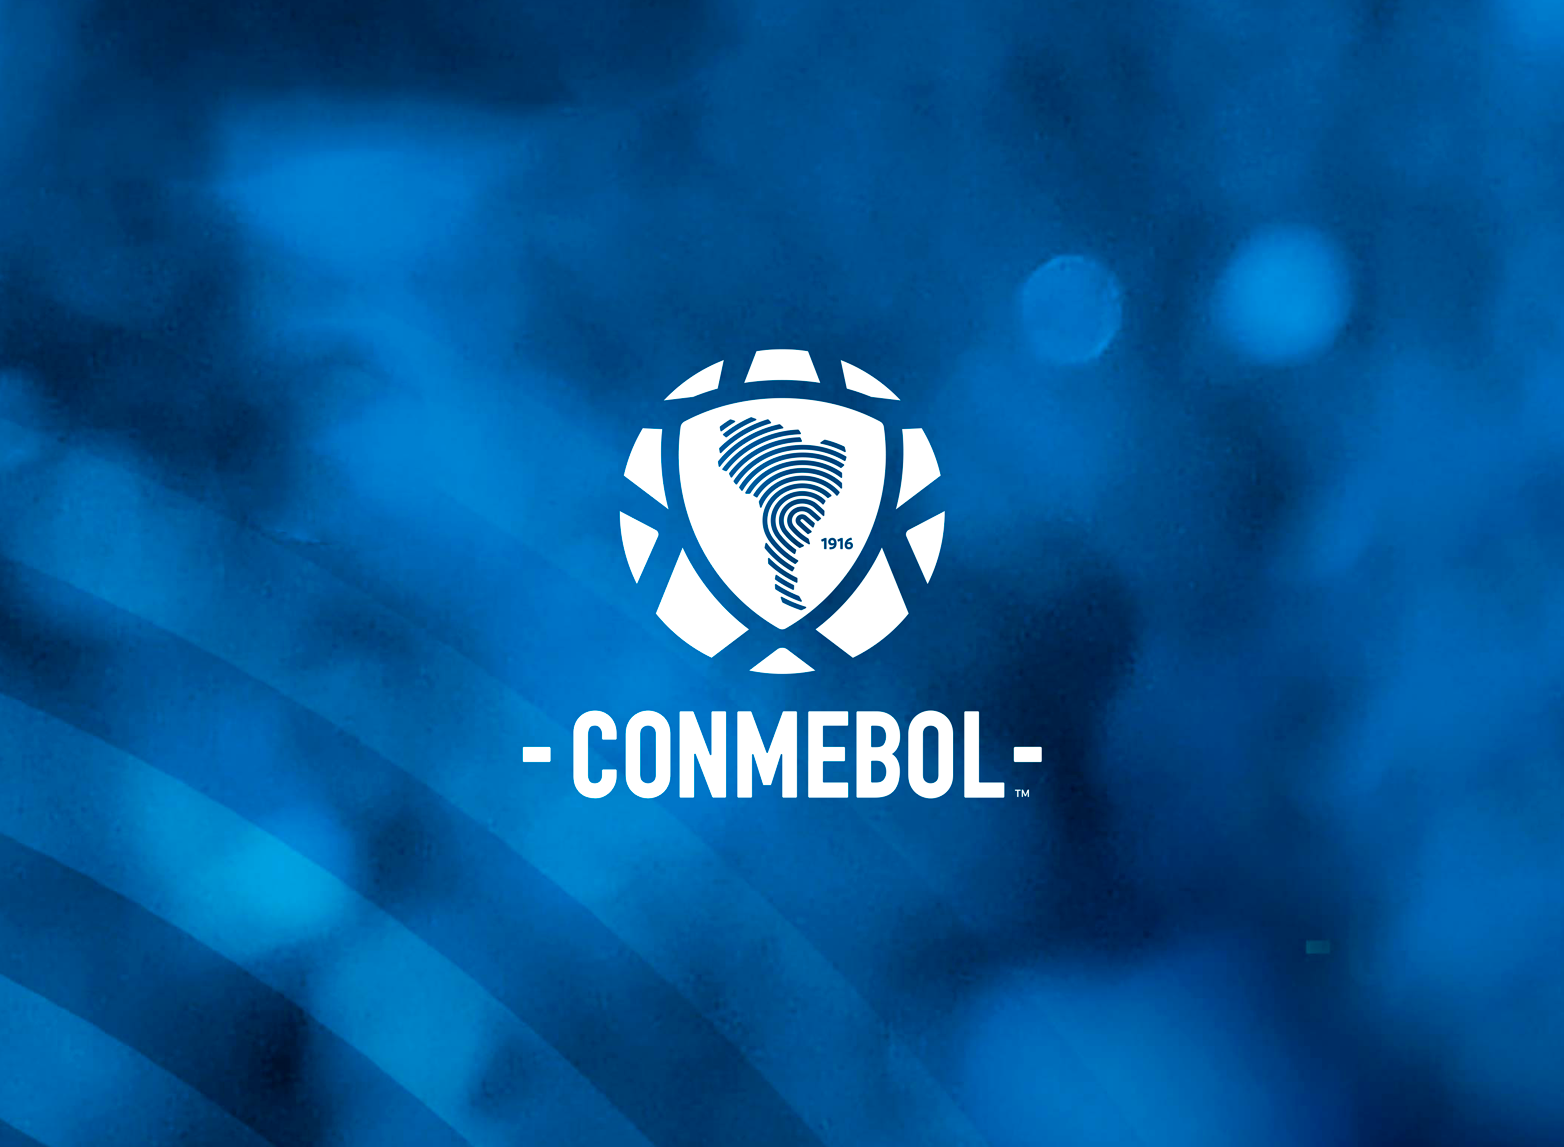 Anche la Conmebol boccia i Mondiali a cadenza biennale: “Non volteremo le spalle a cento anni di tradizione”